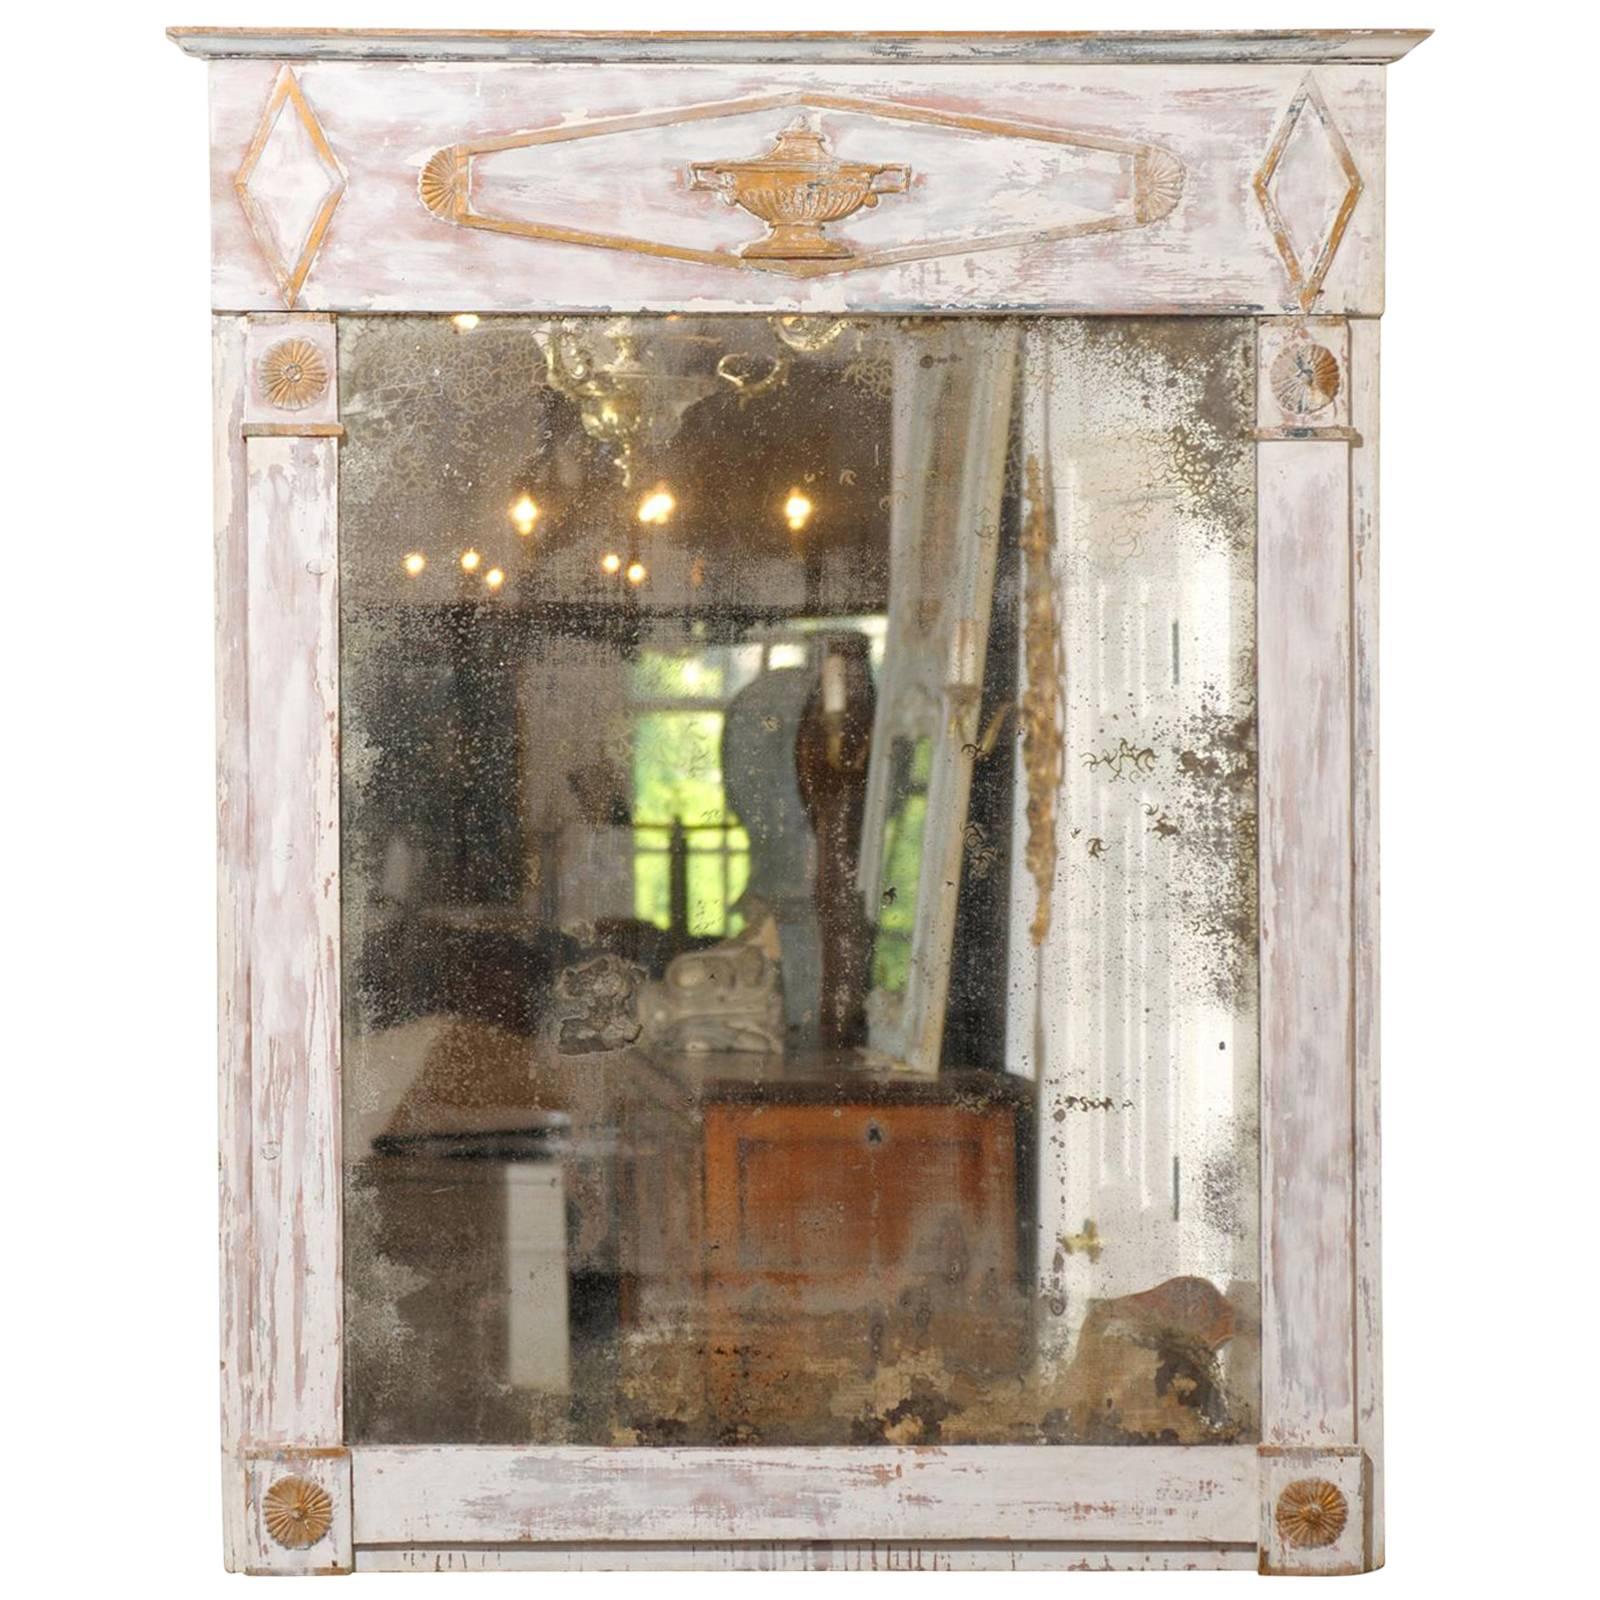 Französischer Directoire Trumeau-Spiegel aus der französischen Periode mit gealterter Farbe, spätes 18. Jahrhundert